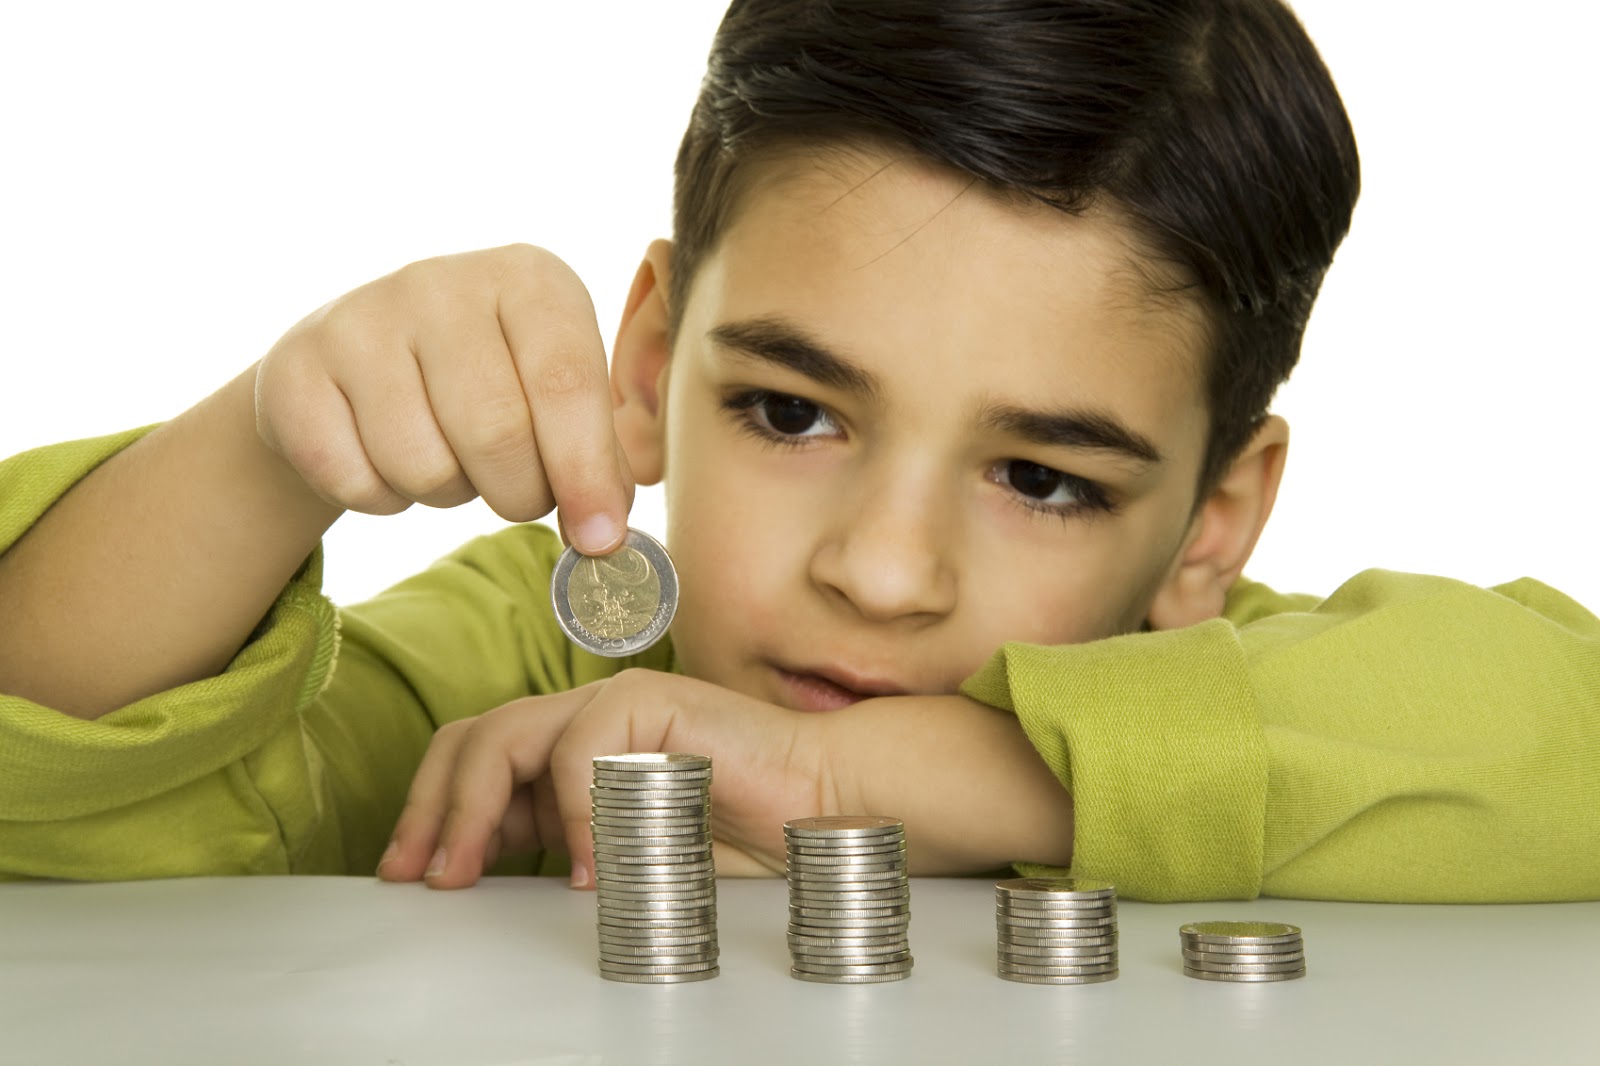 Simple Ways to Teach Good Money Habits to Children